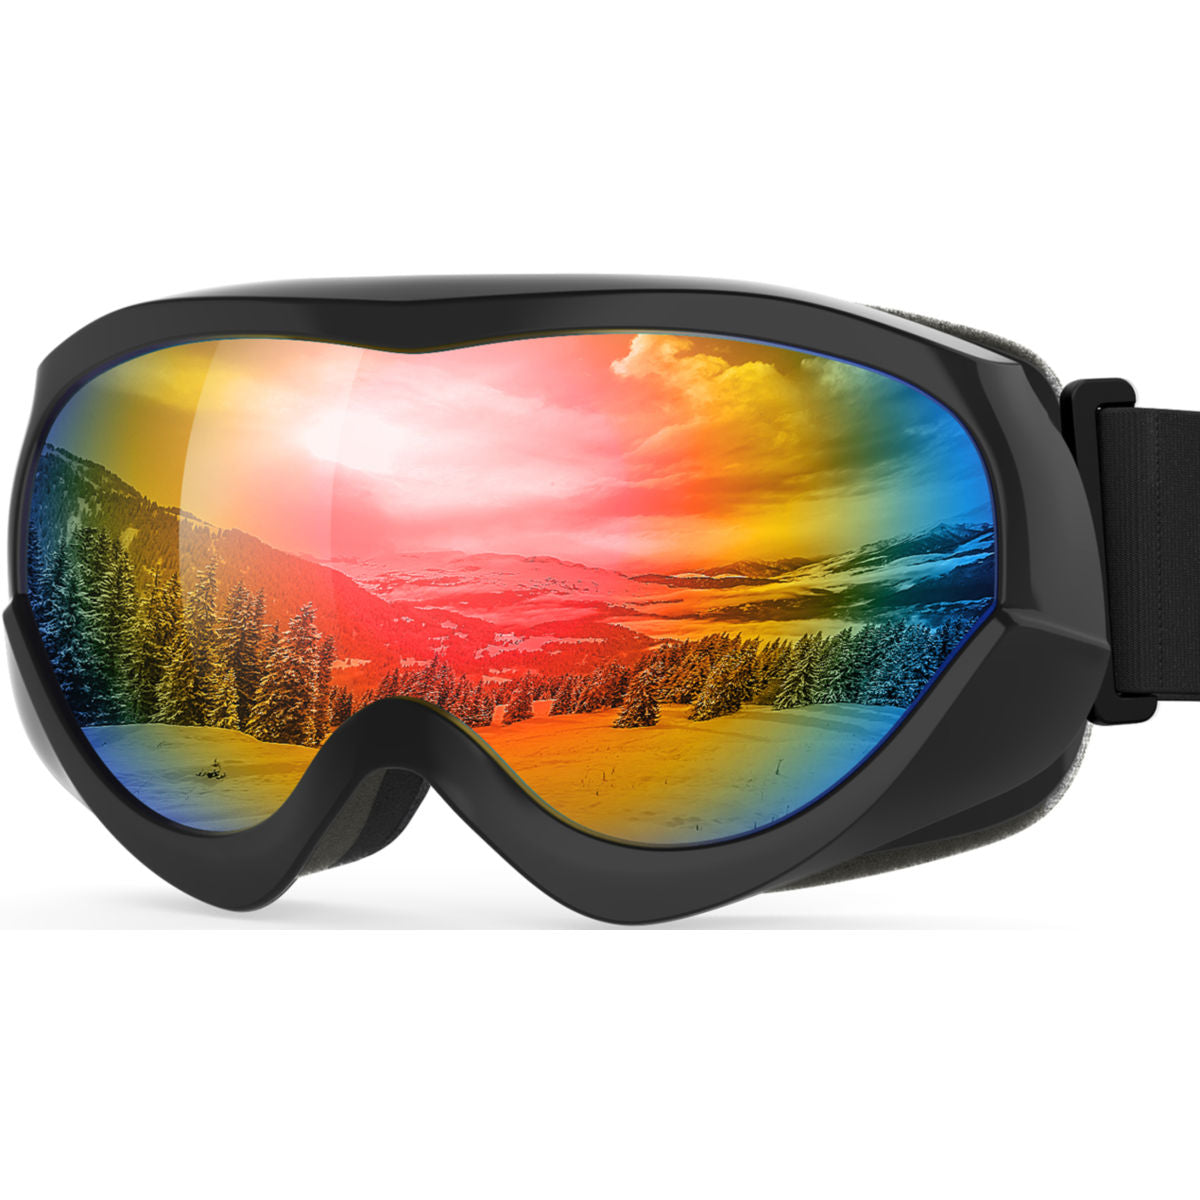 OTG Ski Goggles  Outdoor Master®